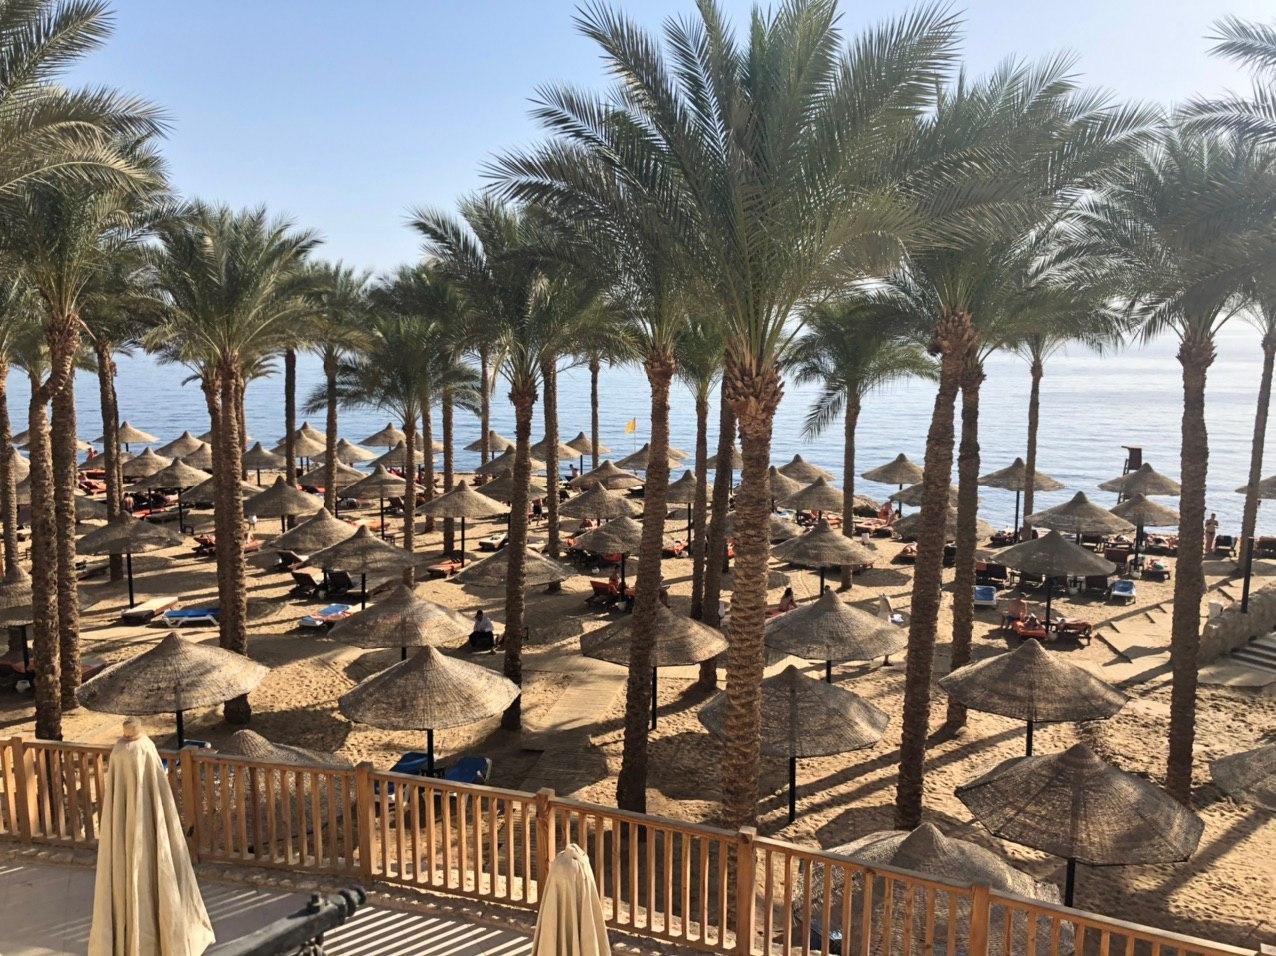 Шарм эль шейх погода сейчас на 14. Египет шармаль Шейх. Пляжи шармаль шейха. Шарм Эль Шейх оградили стеной. Египет Голливуд шармальшейх.